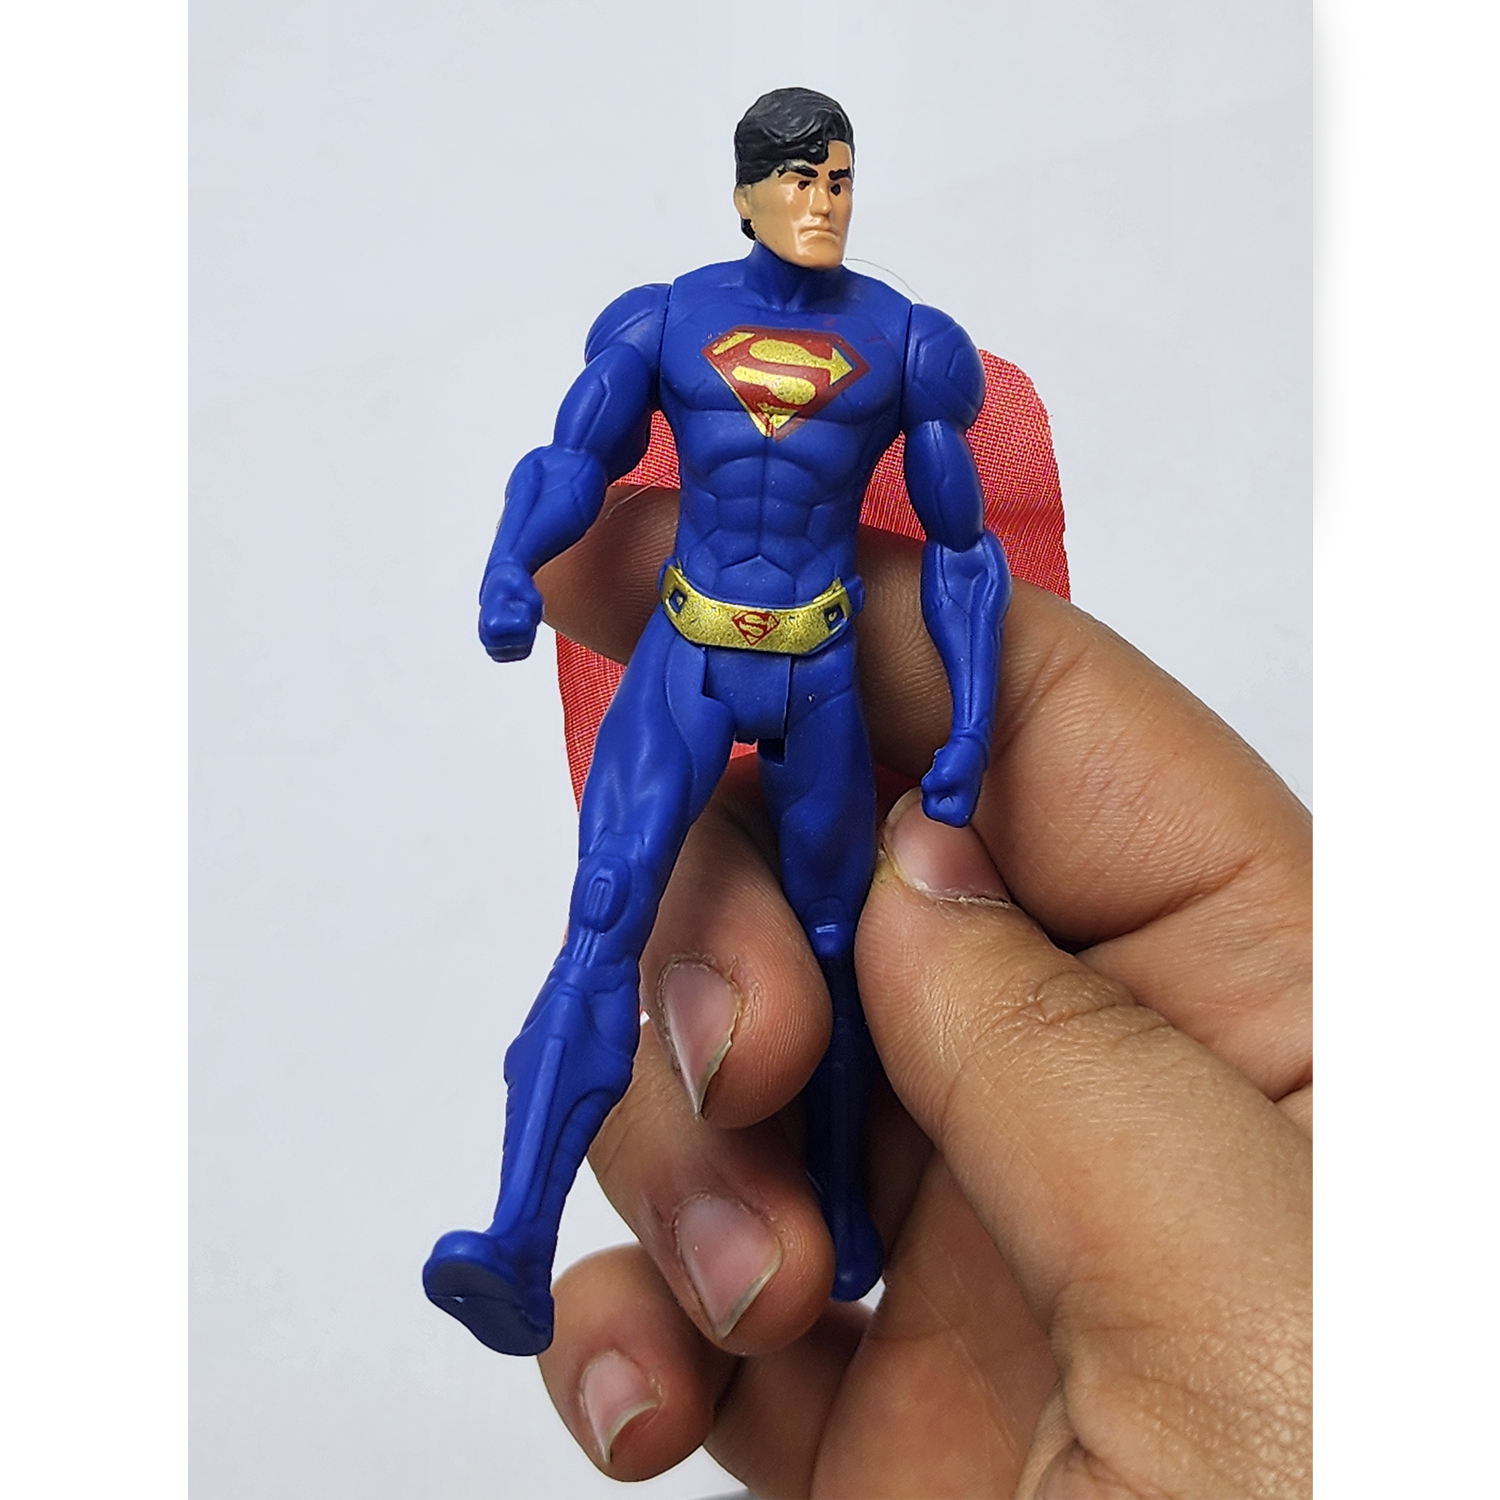 اکشن فیگور مدل سوپرمن AVENGERS SUPERMAN | گارانتی اصالت و سلامت فیزیکی کالا